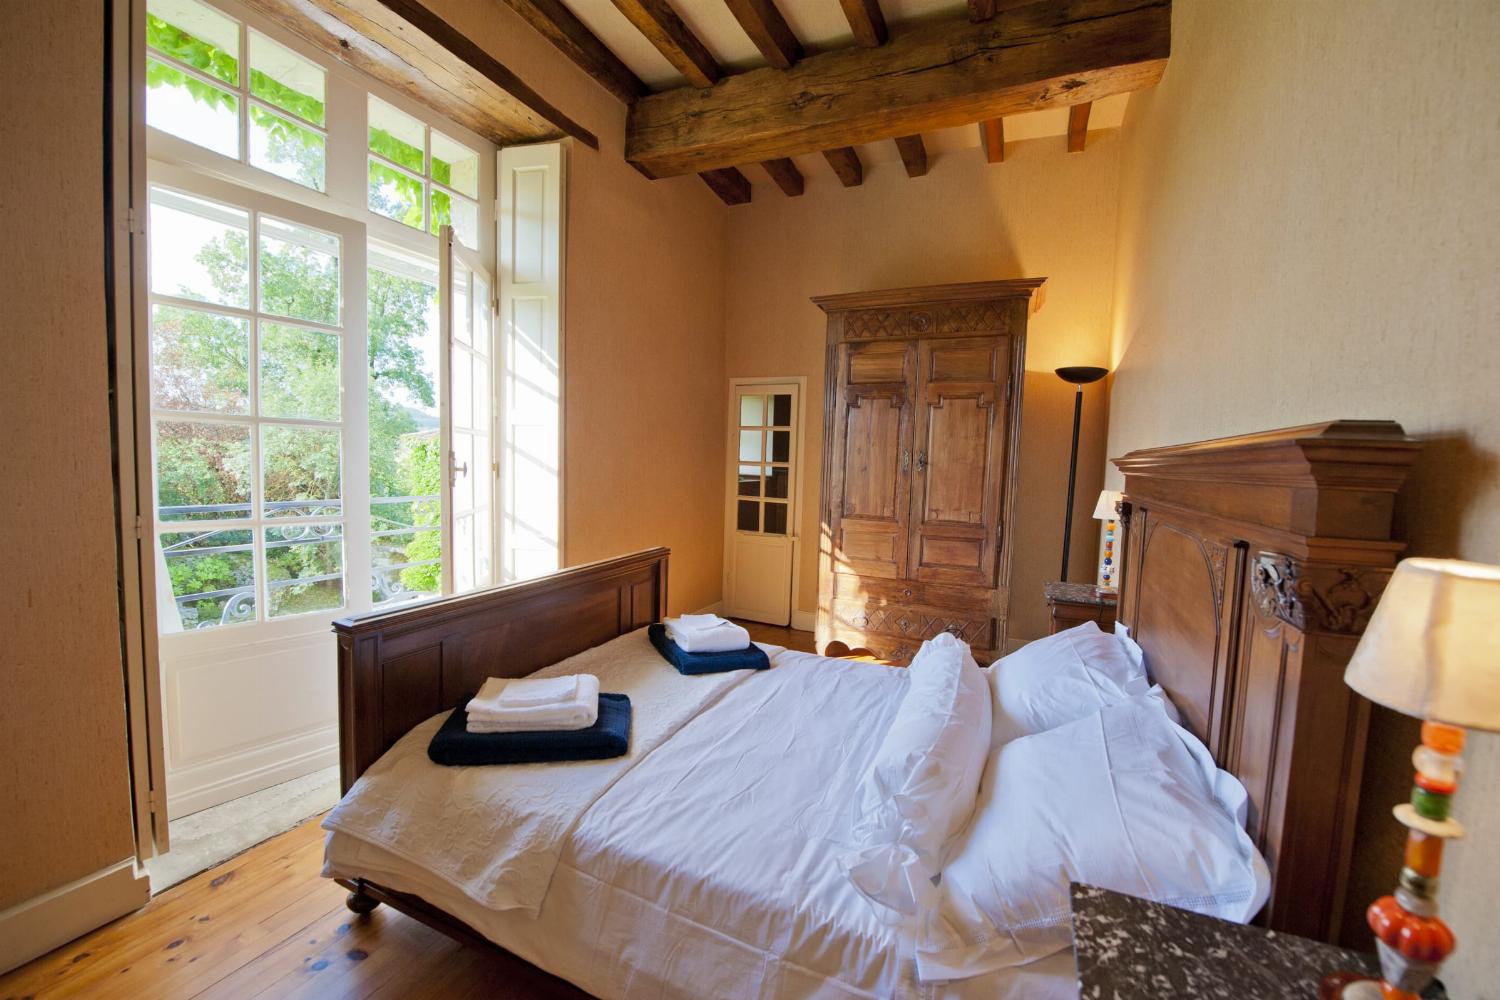 Chambre | Location de vacances dans le Lot-et-Garonne